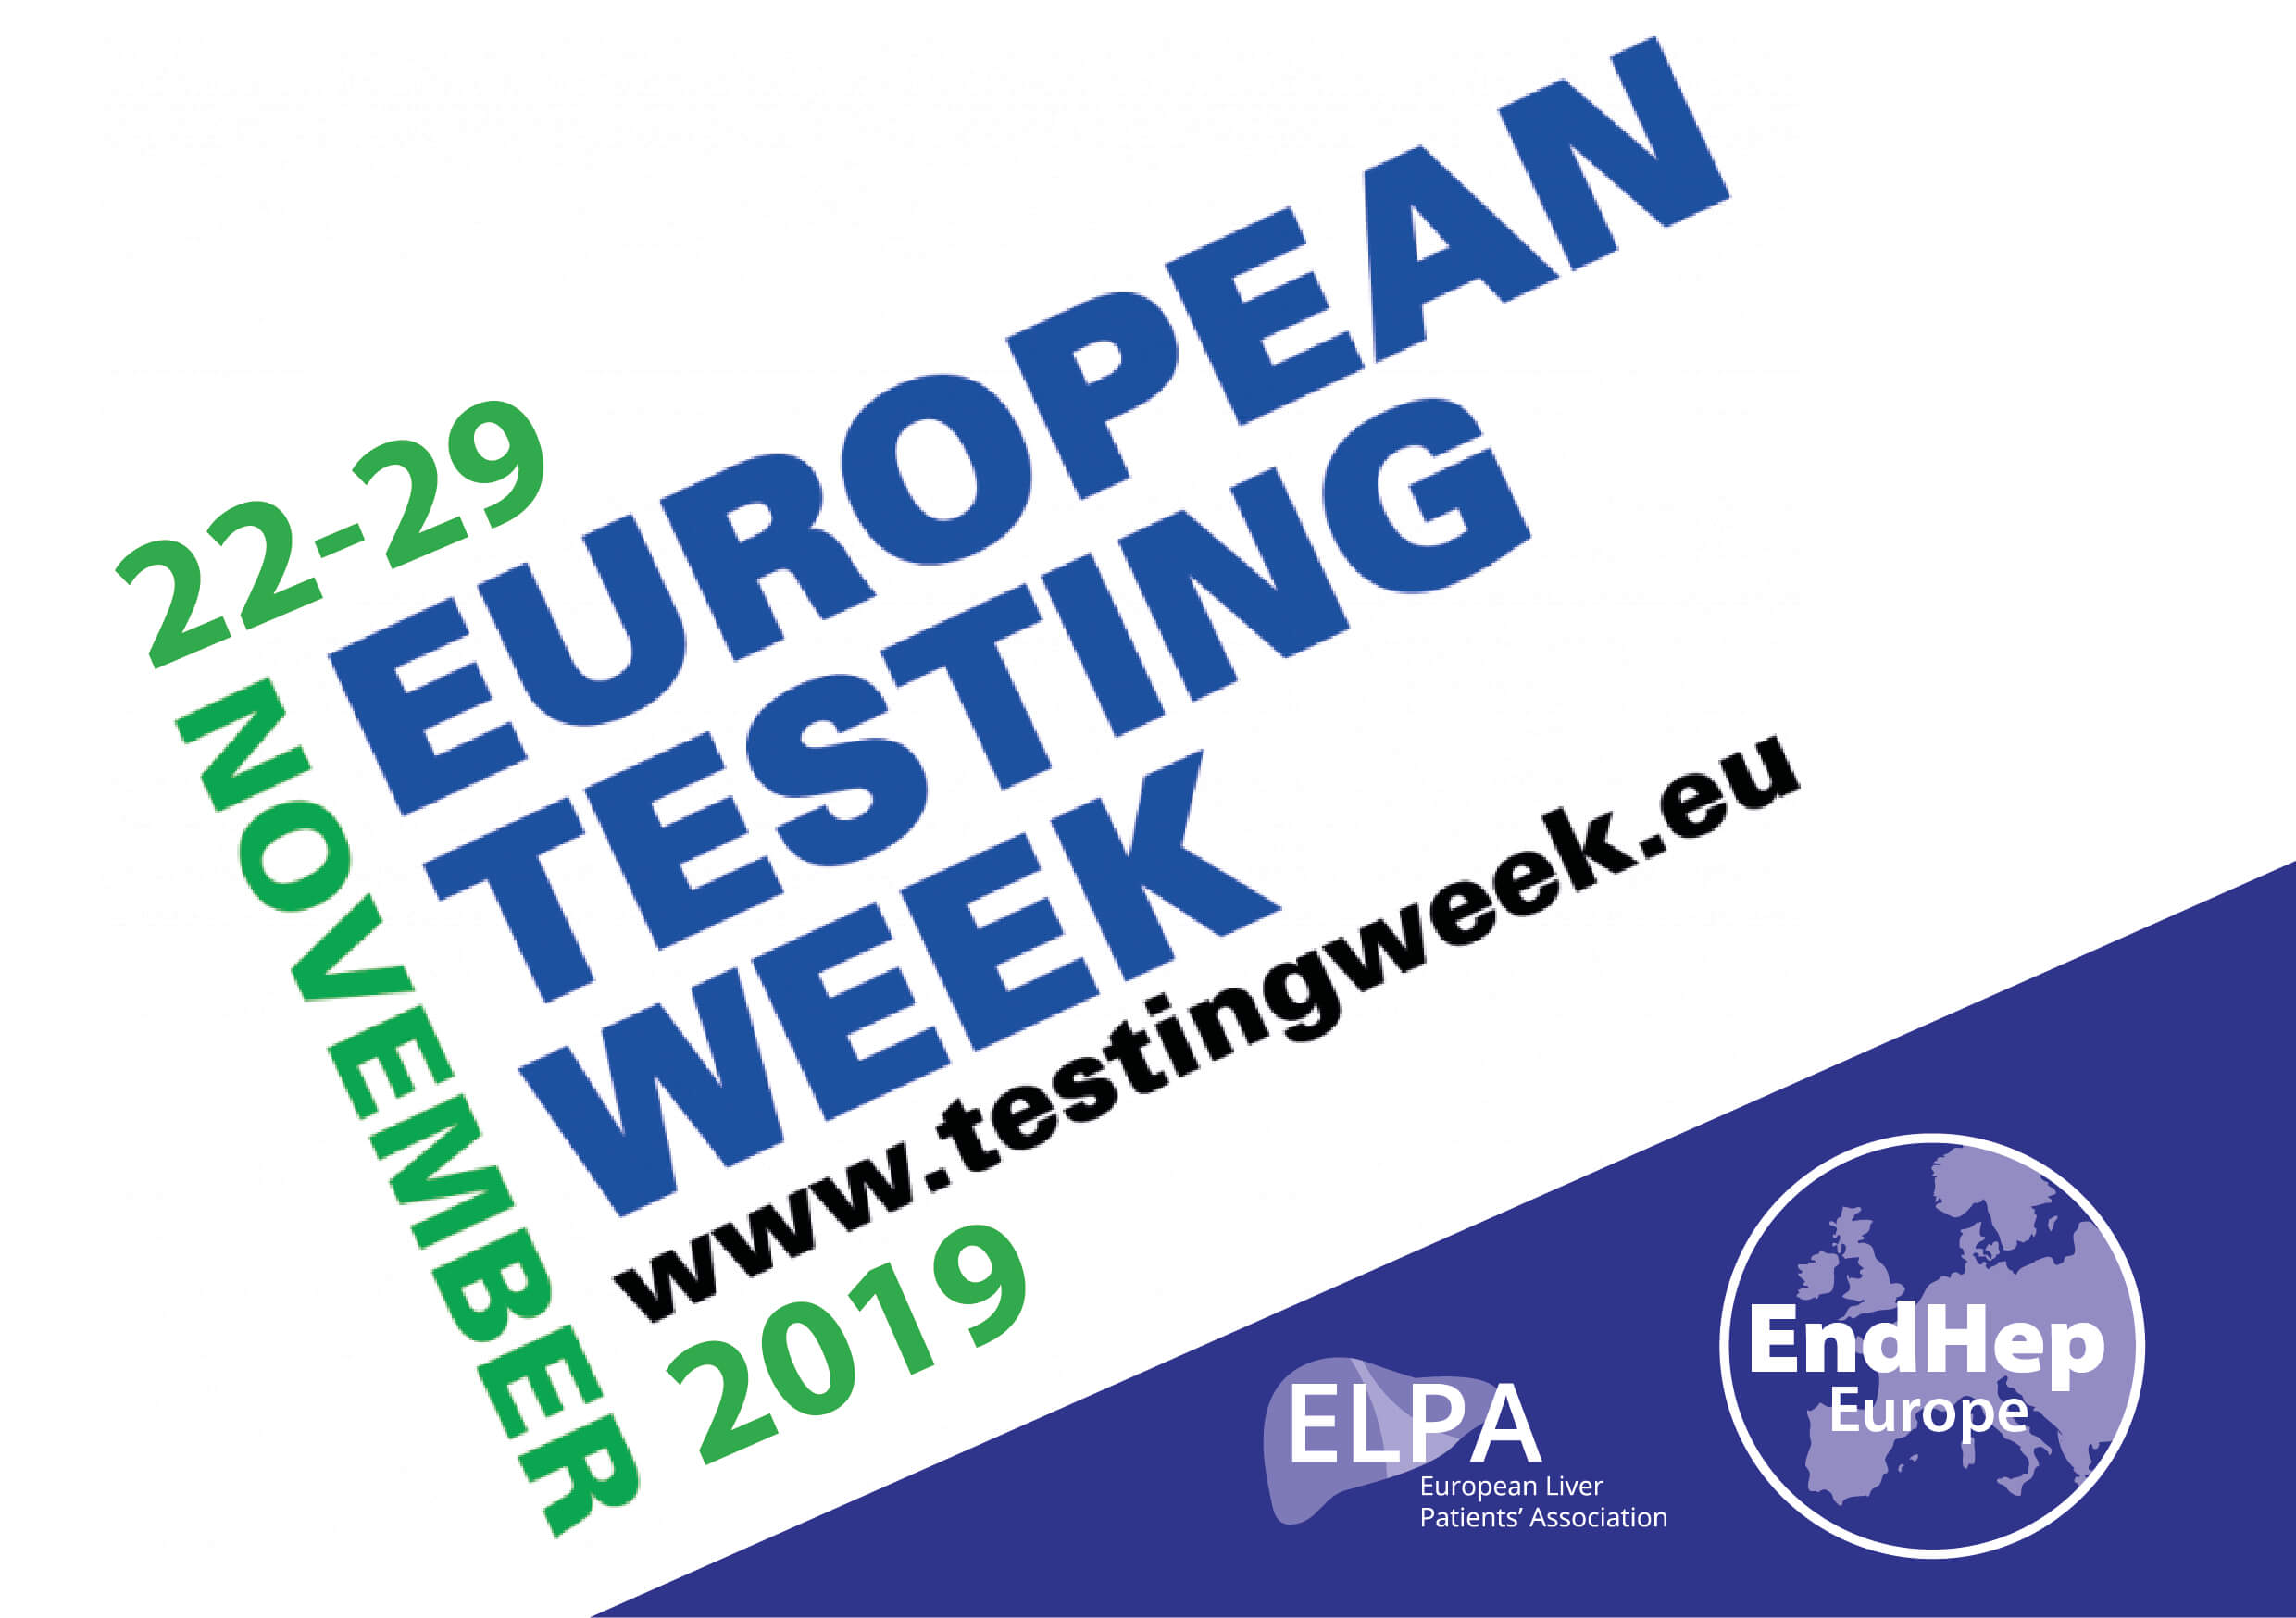 Announcement of #EuroTestWeek'19 #EndHep in Europe!